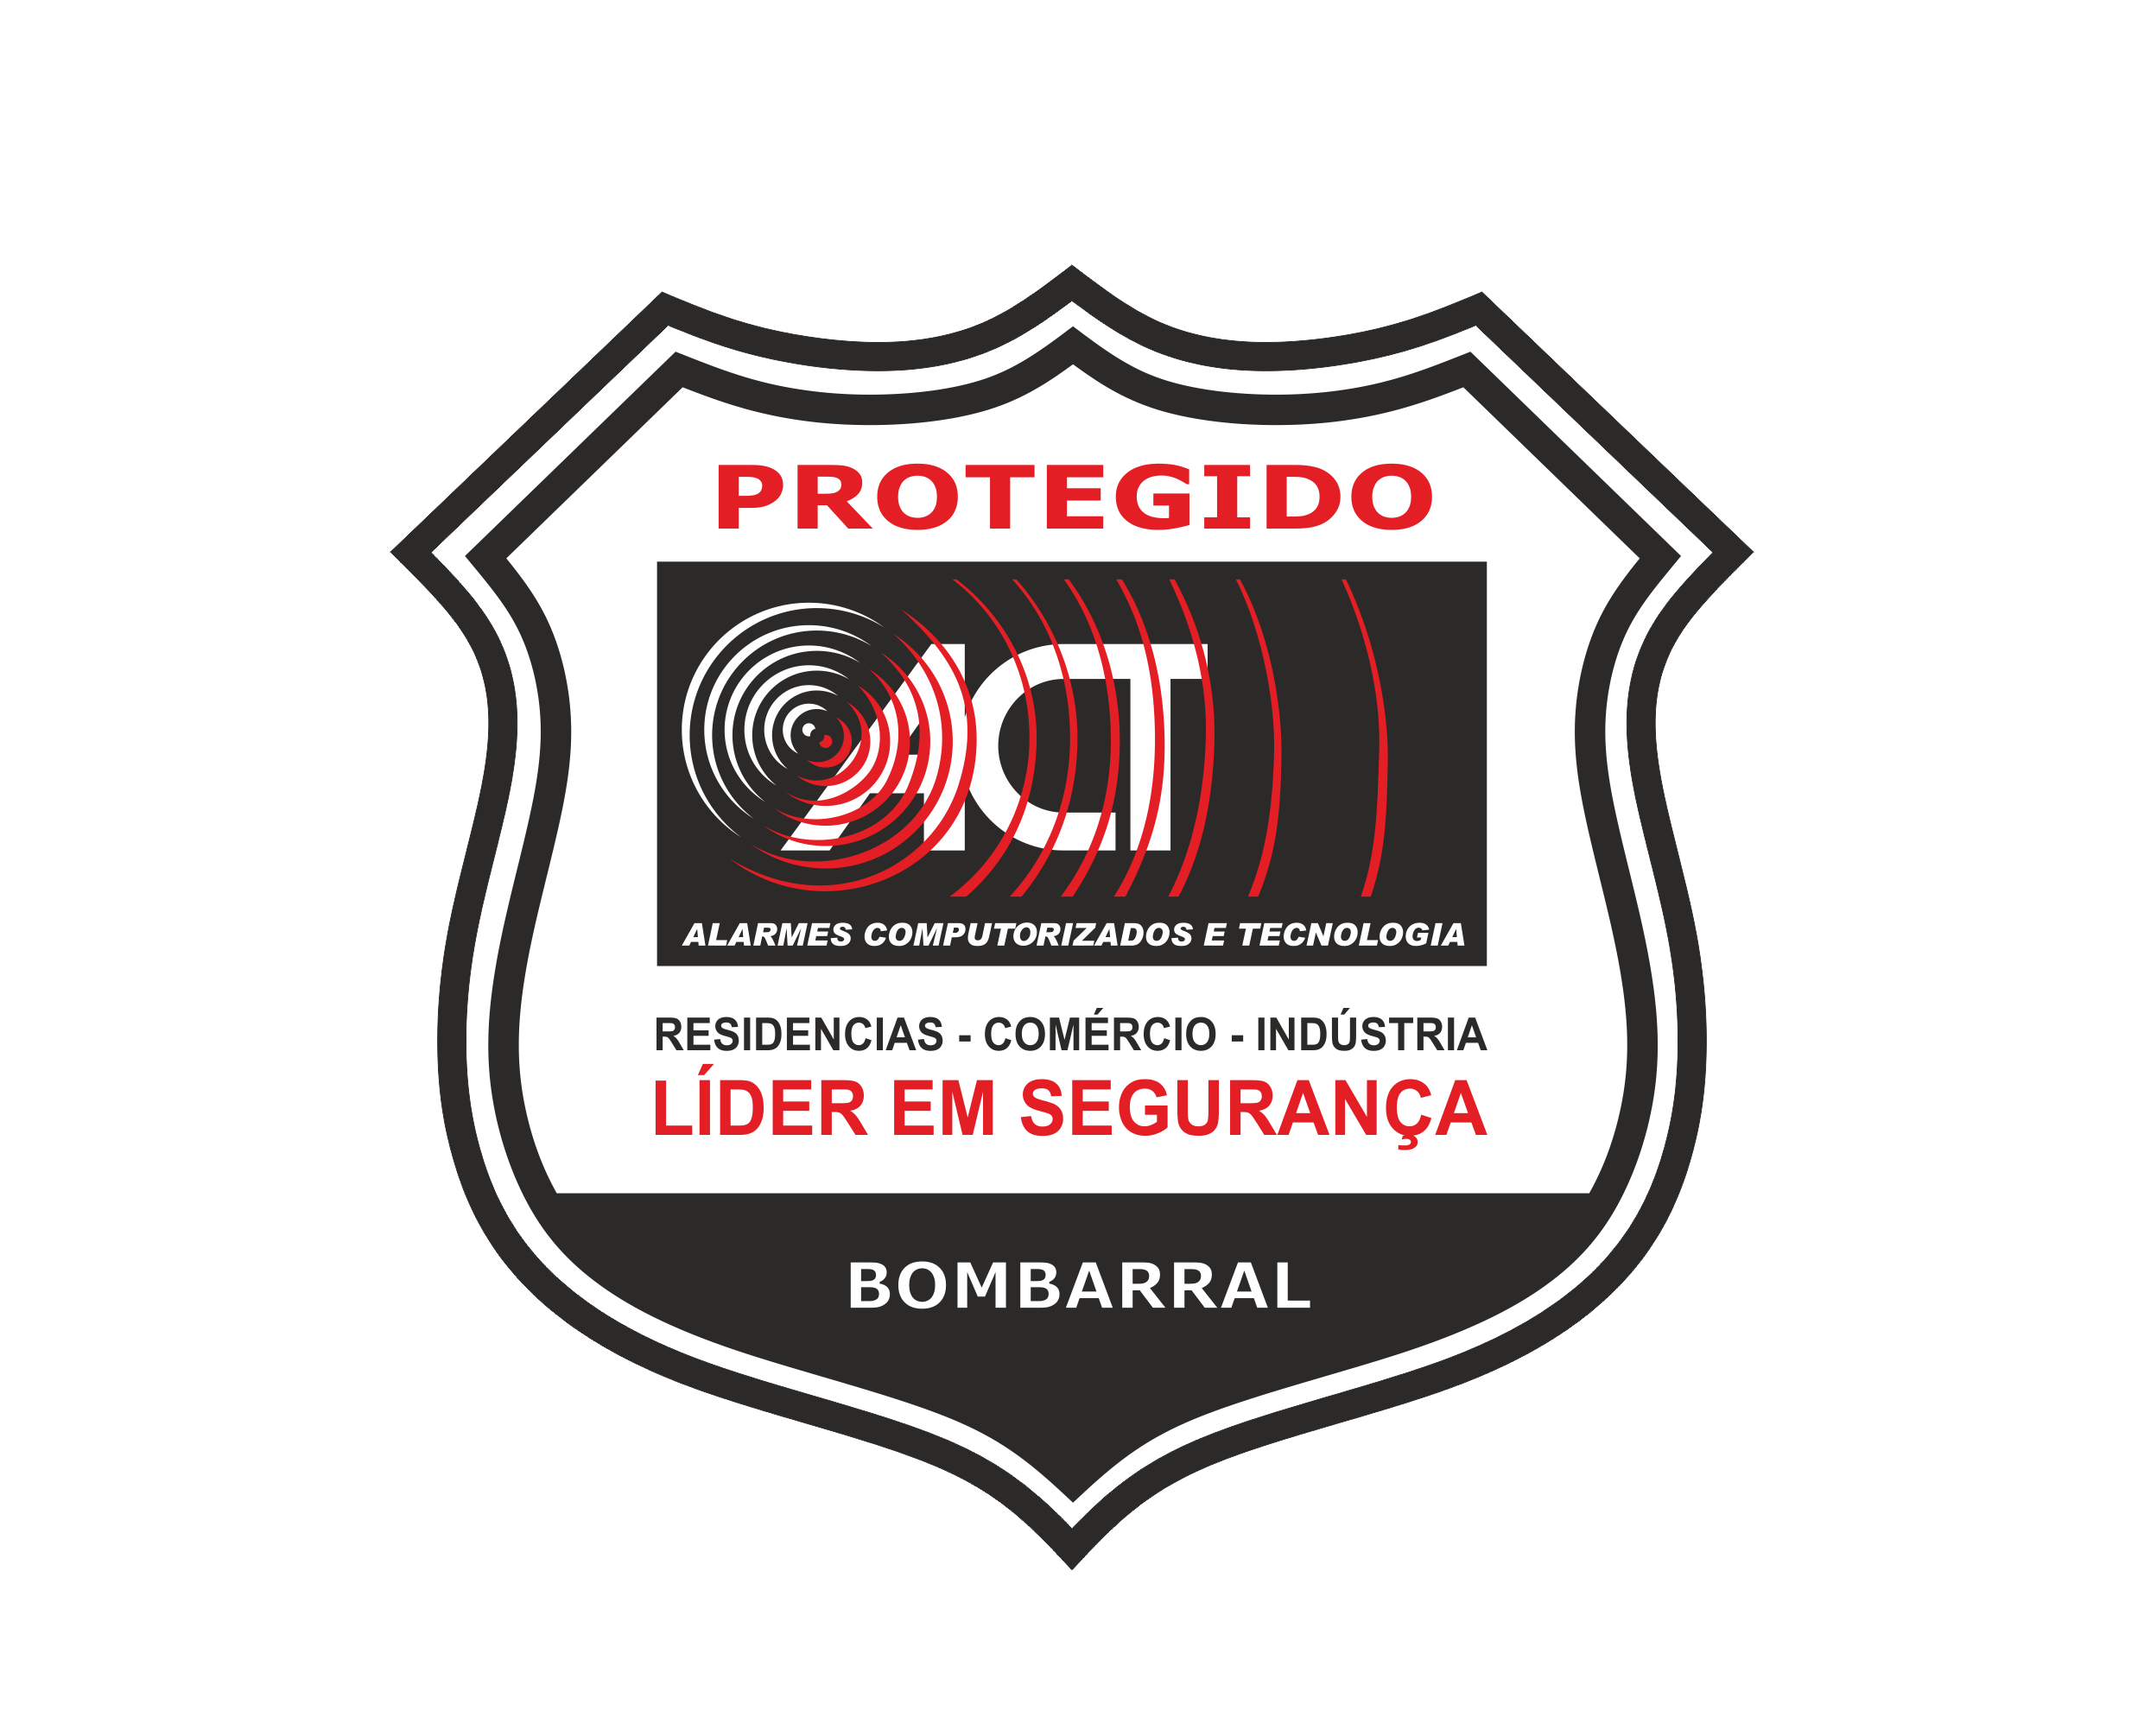 ACT - Alarmes Computorizados e Tecnologia, líder em segurança